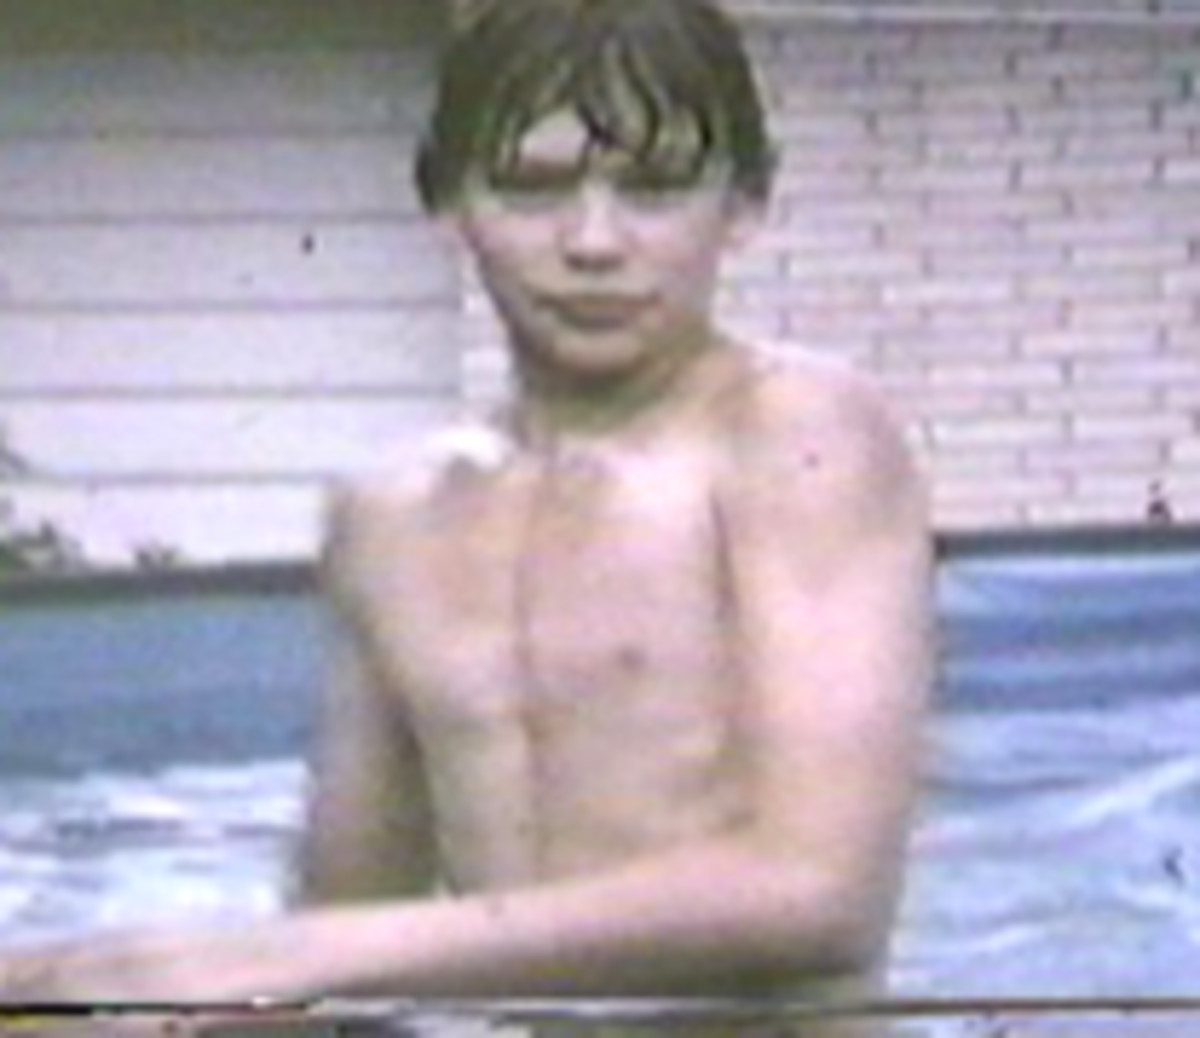 Dahmer Aged 11